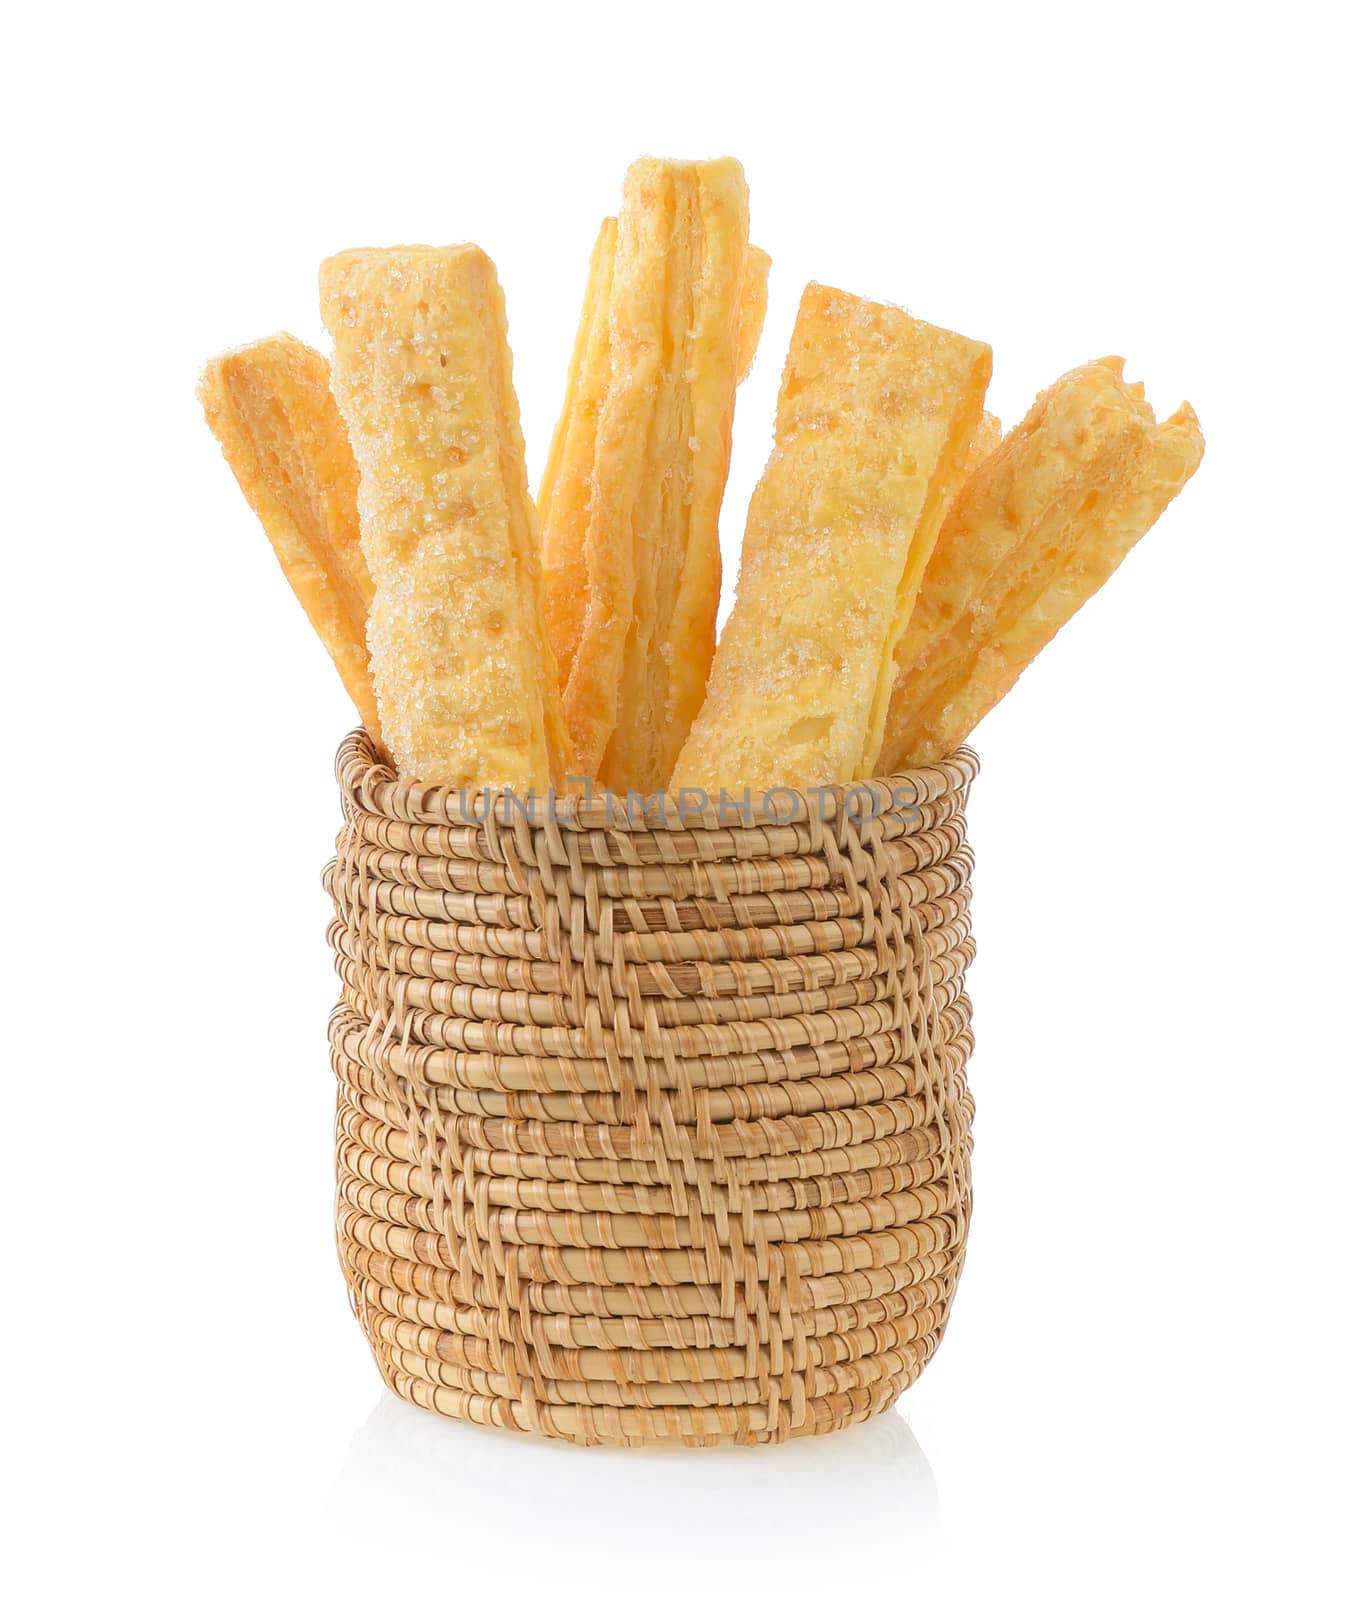 Pie or bread Sticks in basket by sommai